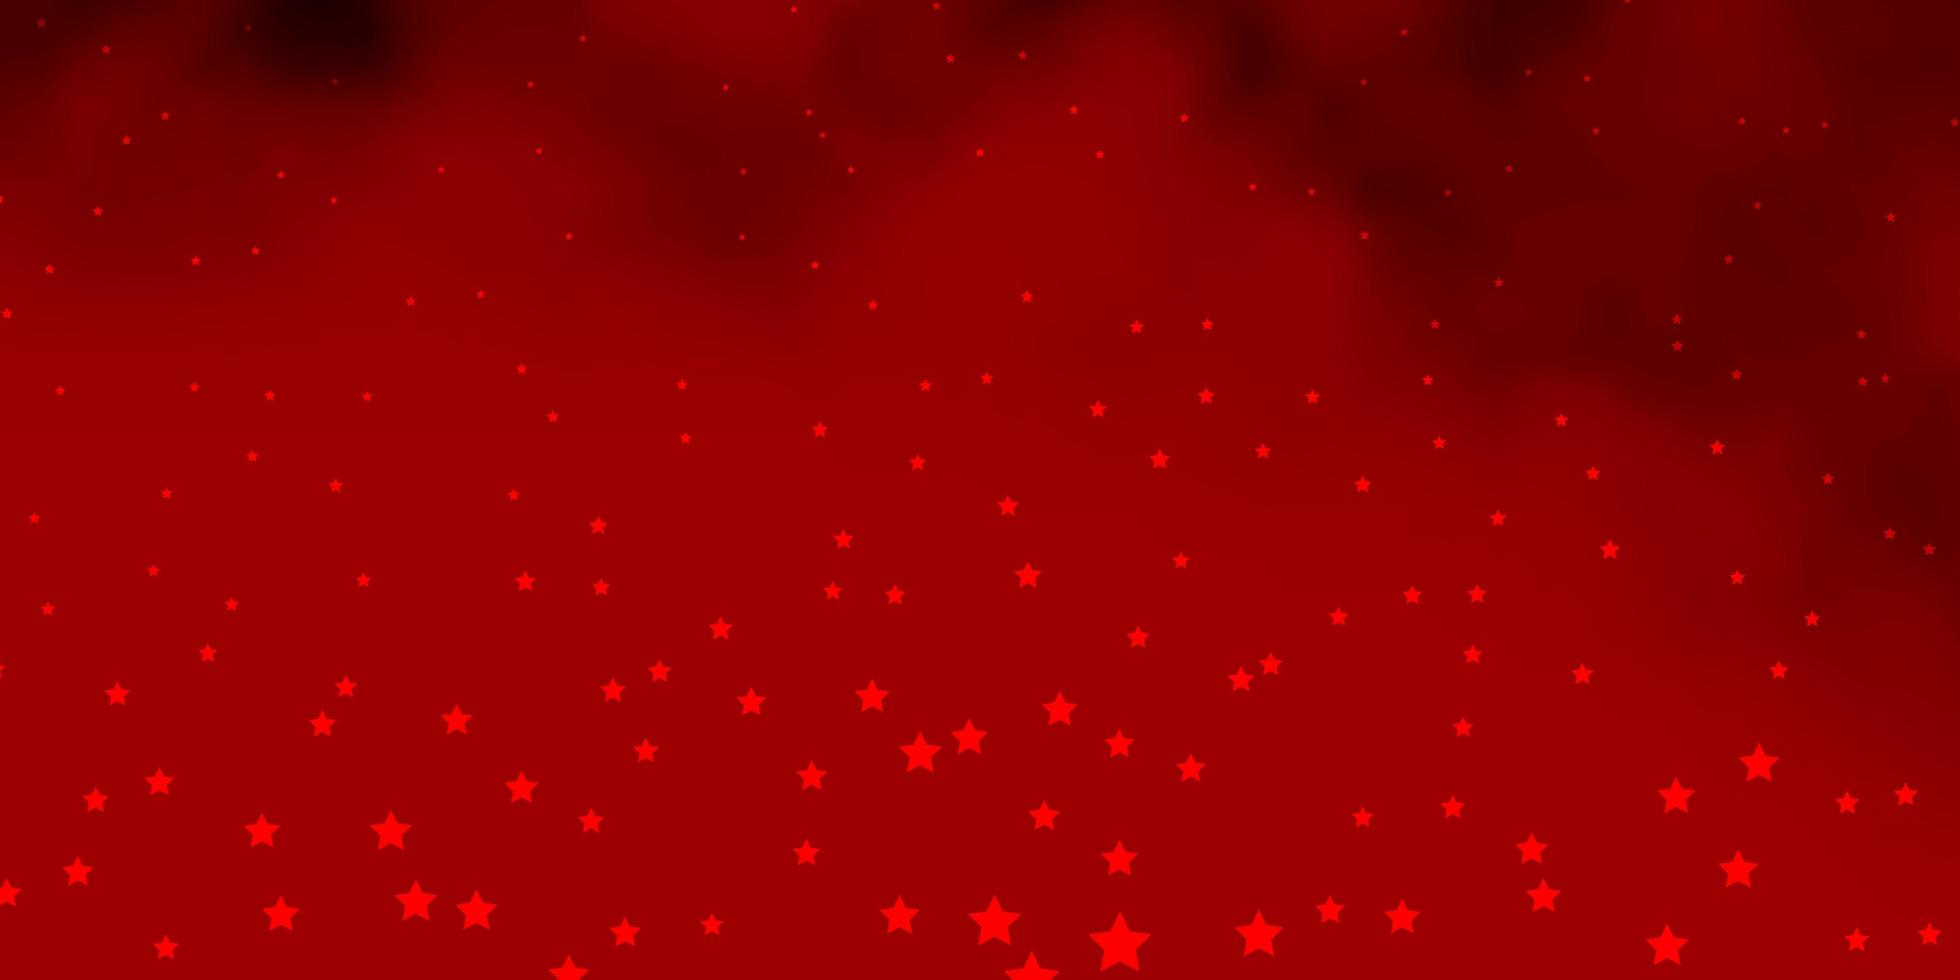 trama vettoriale rosso scuro con bellissime stelle.